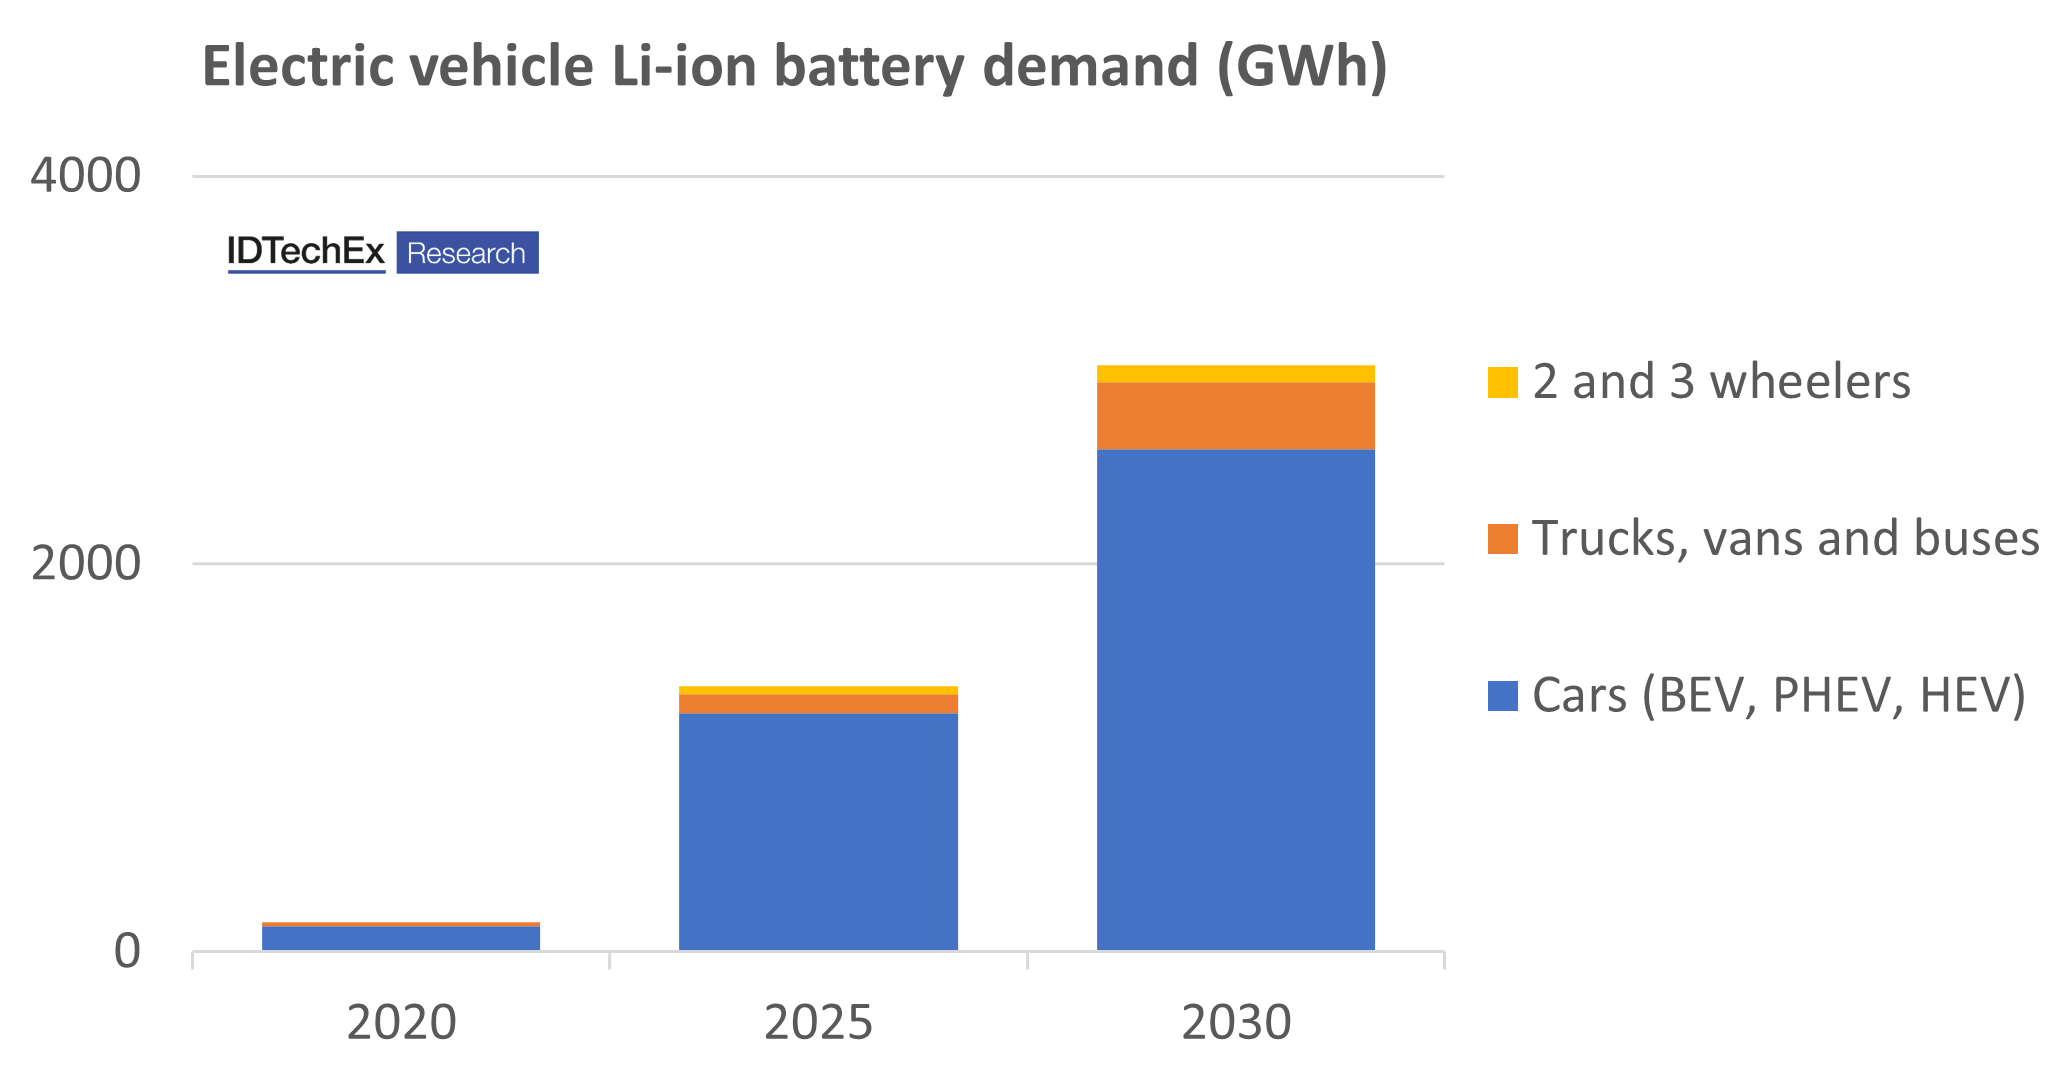 Wachstum der EV-Li-Ionen-Nachfrage. Quelle: IDTechEx.